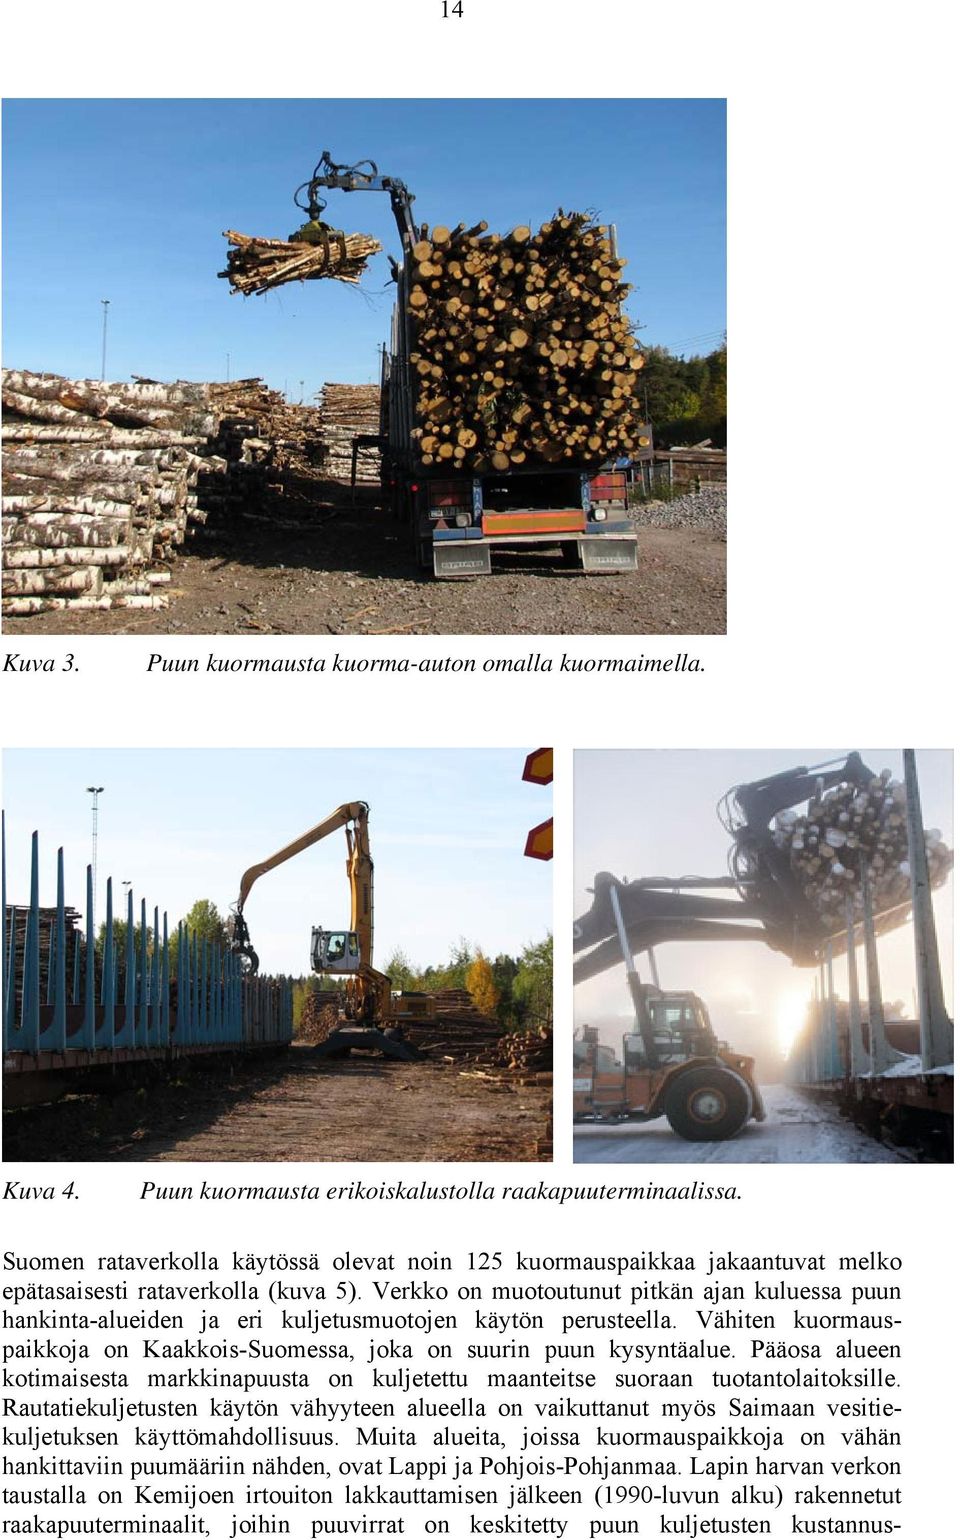 Verkko on muotoutunut pitkän ajan kuluessa puun hankinta-alueiden ja eri kuljetusmuotojen käytön perusteella. Vähiten kuormauspaikkoja on Kaakkois-Suomessa, joka on suurin puun kysyntäalue.